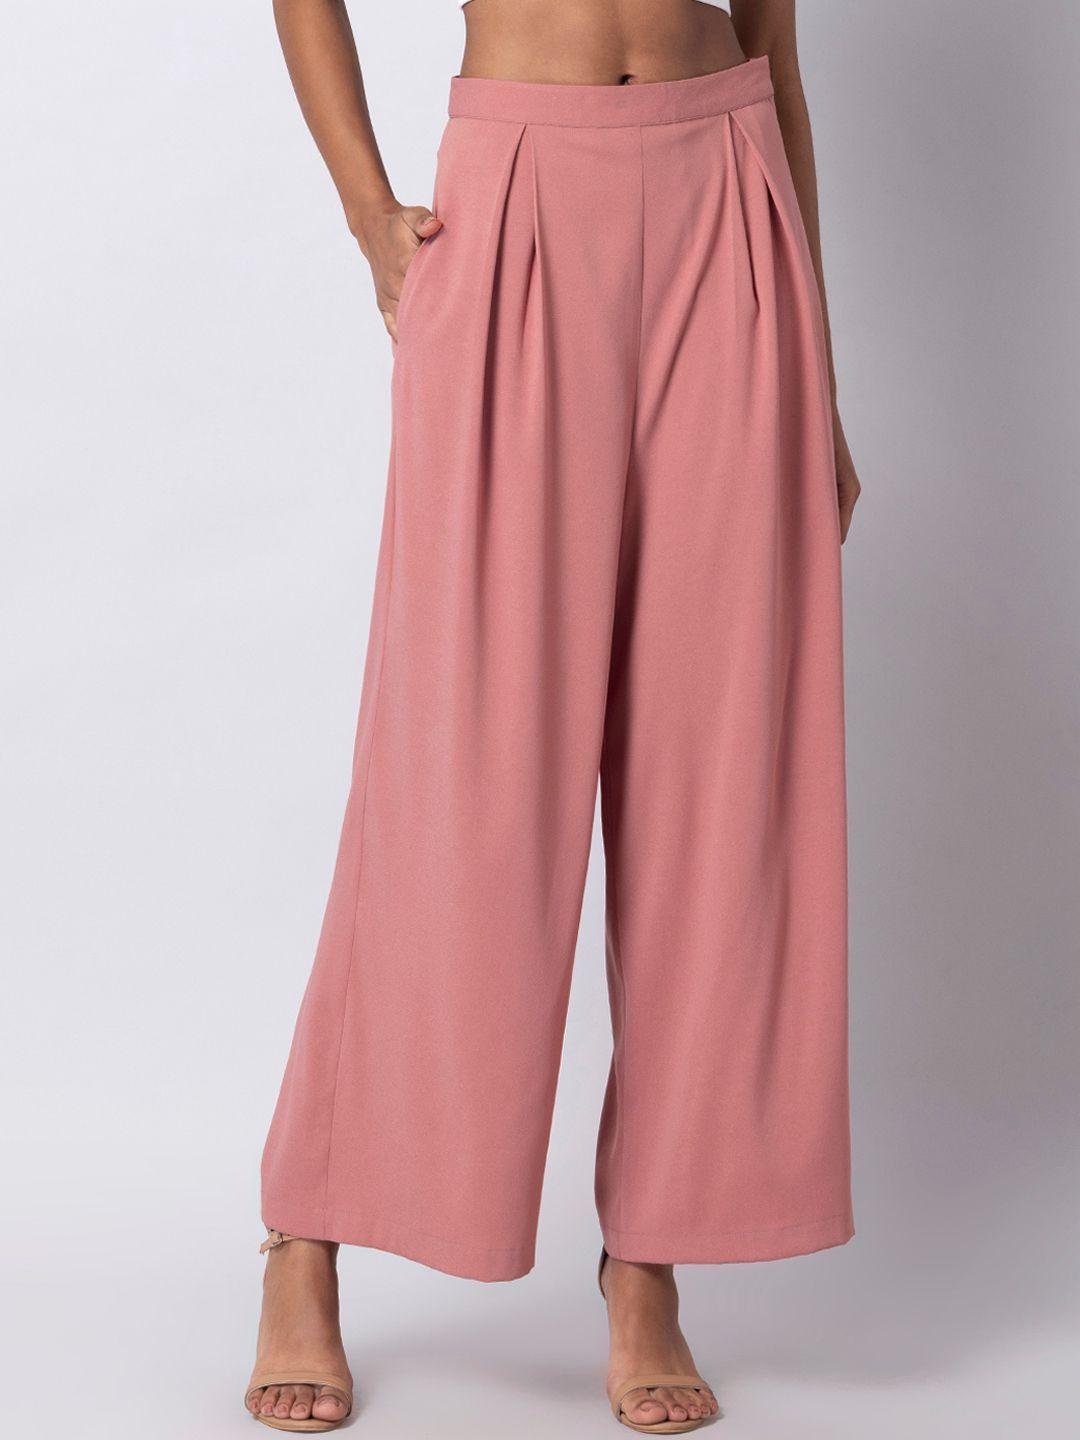 faballey women pink pleated high waist wide leg trousers